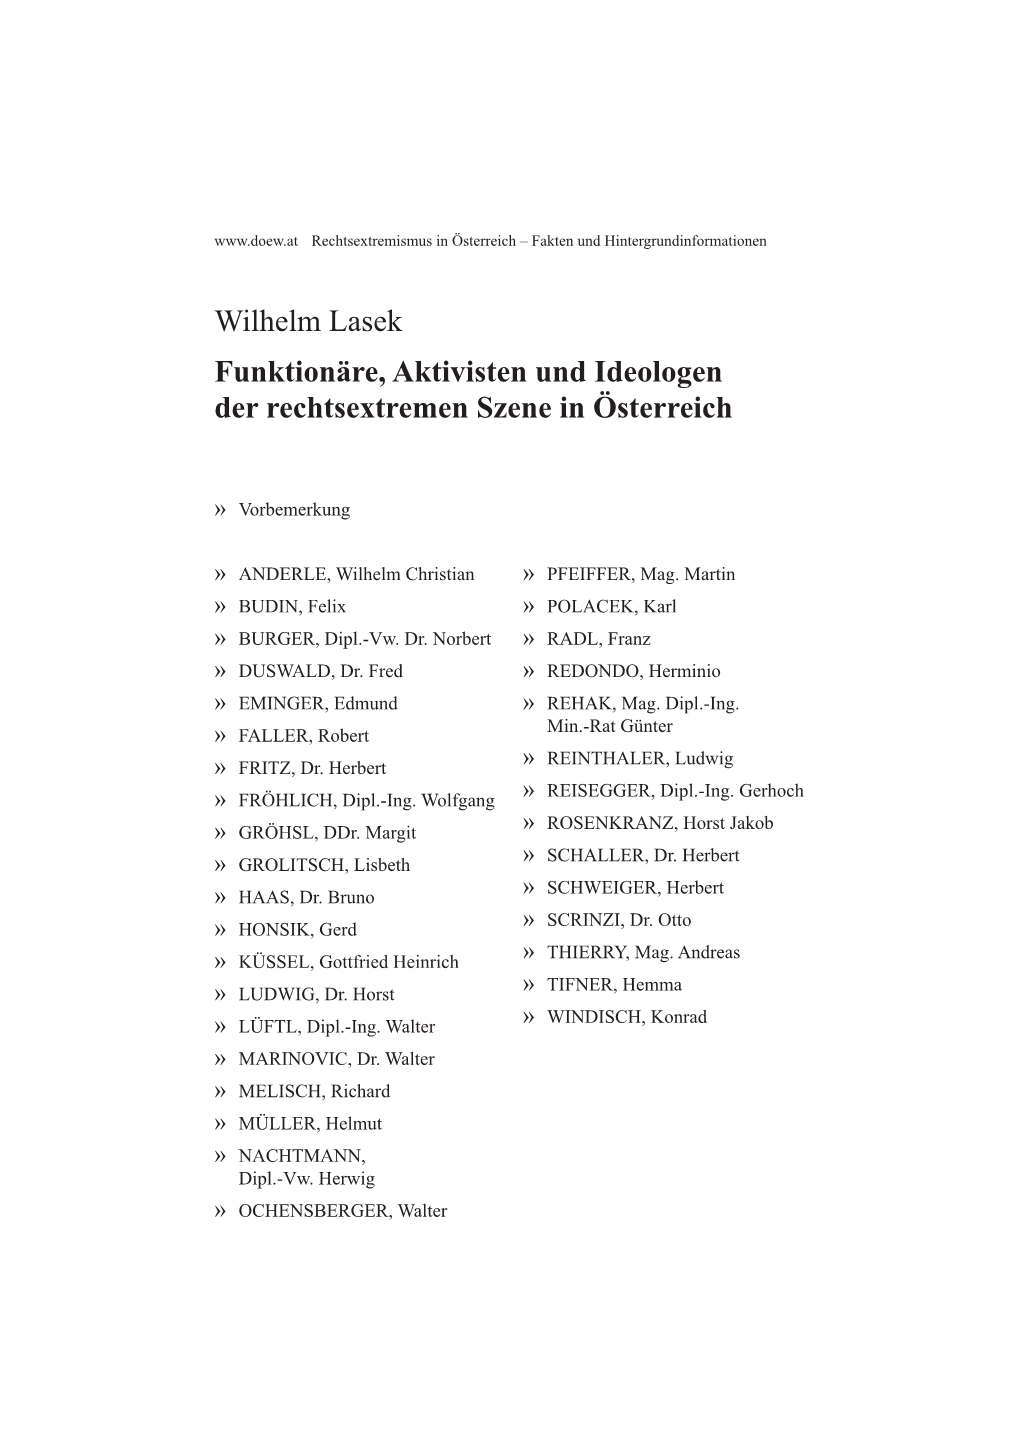 Wilhelm Lasek Funktionäre, Aktivisten Und Ideologen Der Rechtsextremen Szene in Österreich